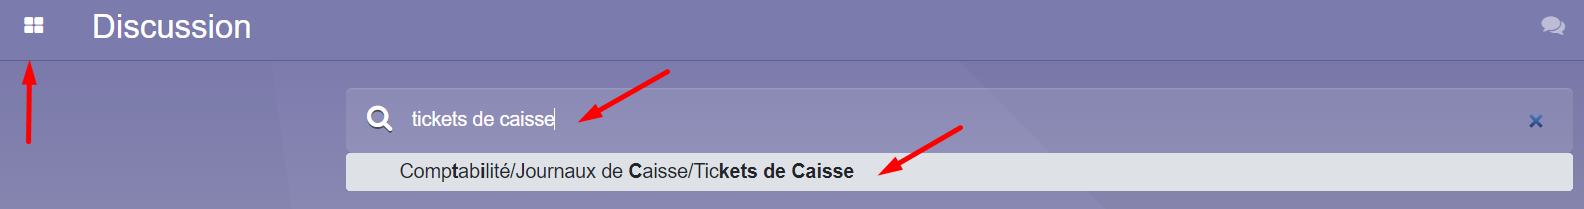 ticket_de_caisse1.png